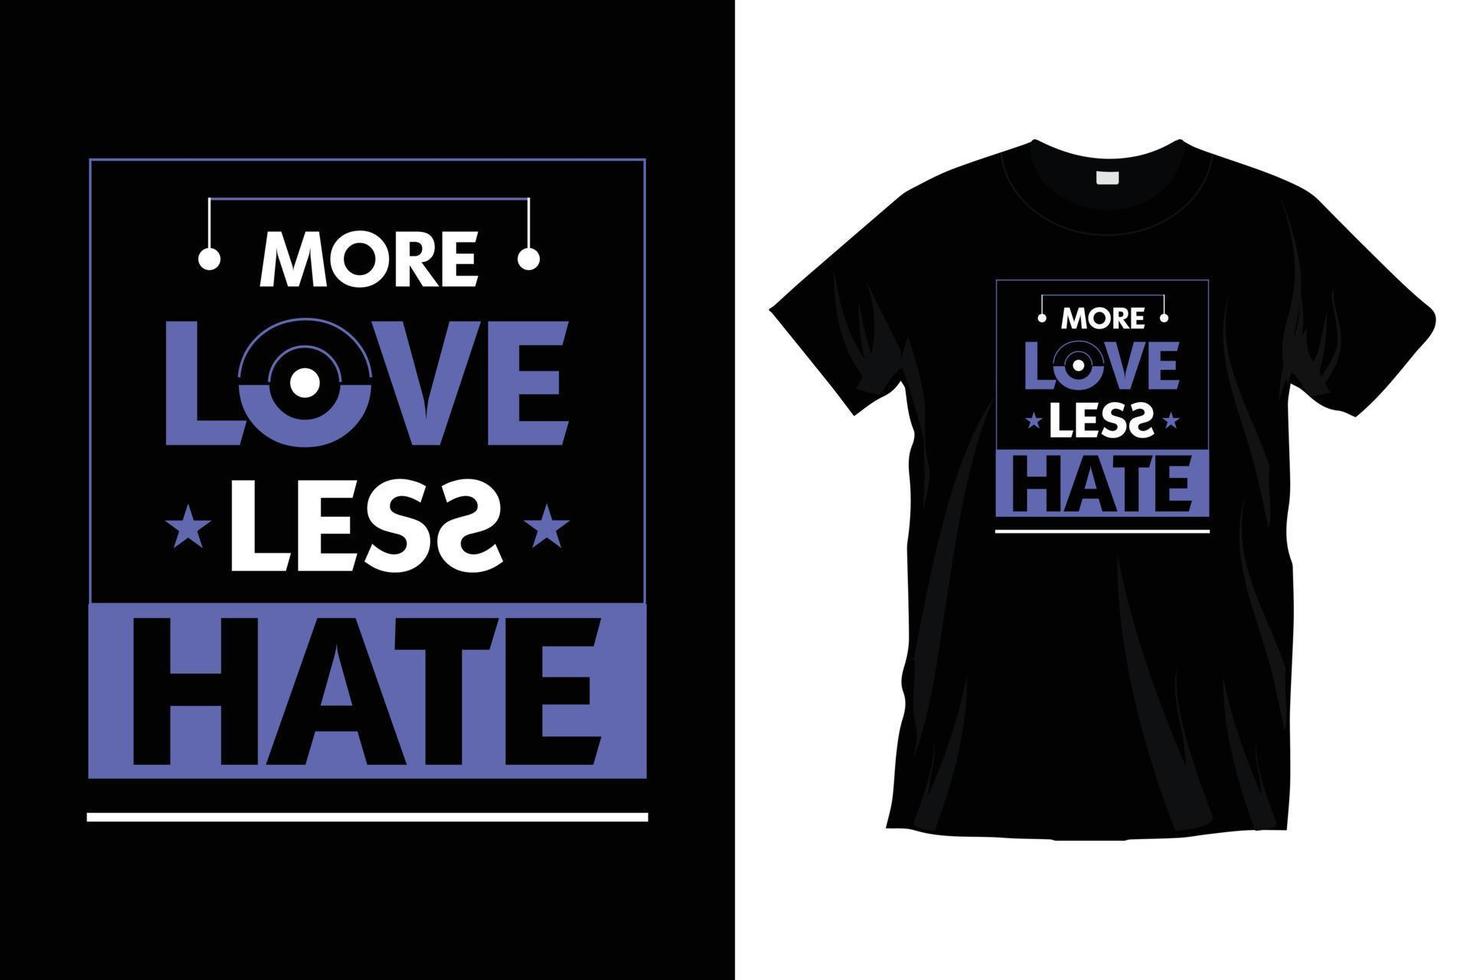 más amor menos odio... diseño inspirador de camisetas tipográficas para estampados, prendas de vestir, vectores, arte, ilustración, tipografía, afiche, plantilla, diseño moderno de camisetas negras. vector